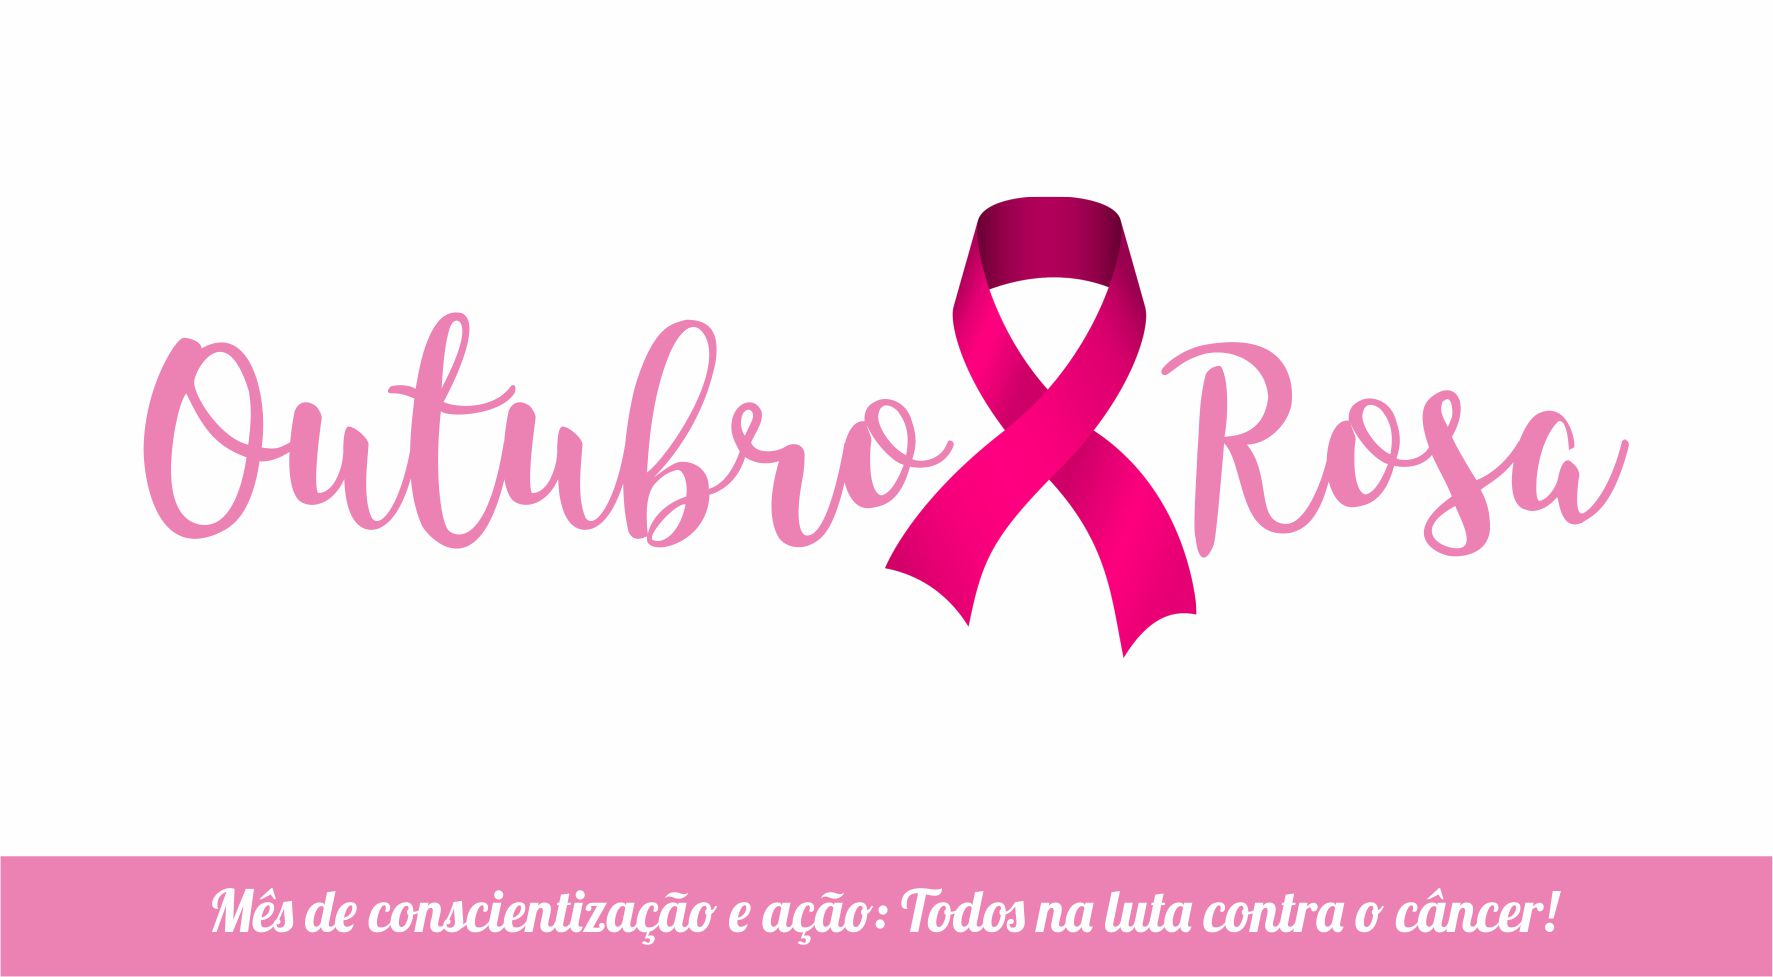 Shopping Pelotas cria programação para o Outubro Rosa com workshops e Loja Rosa